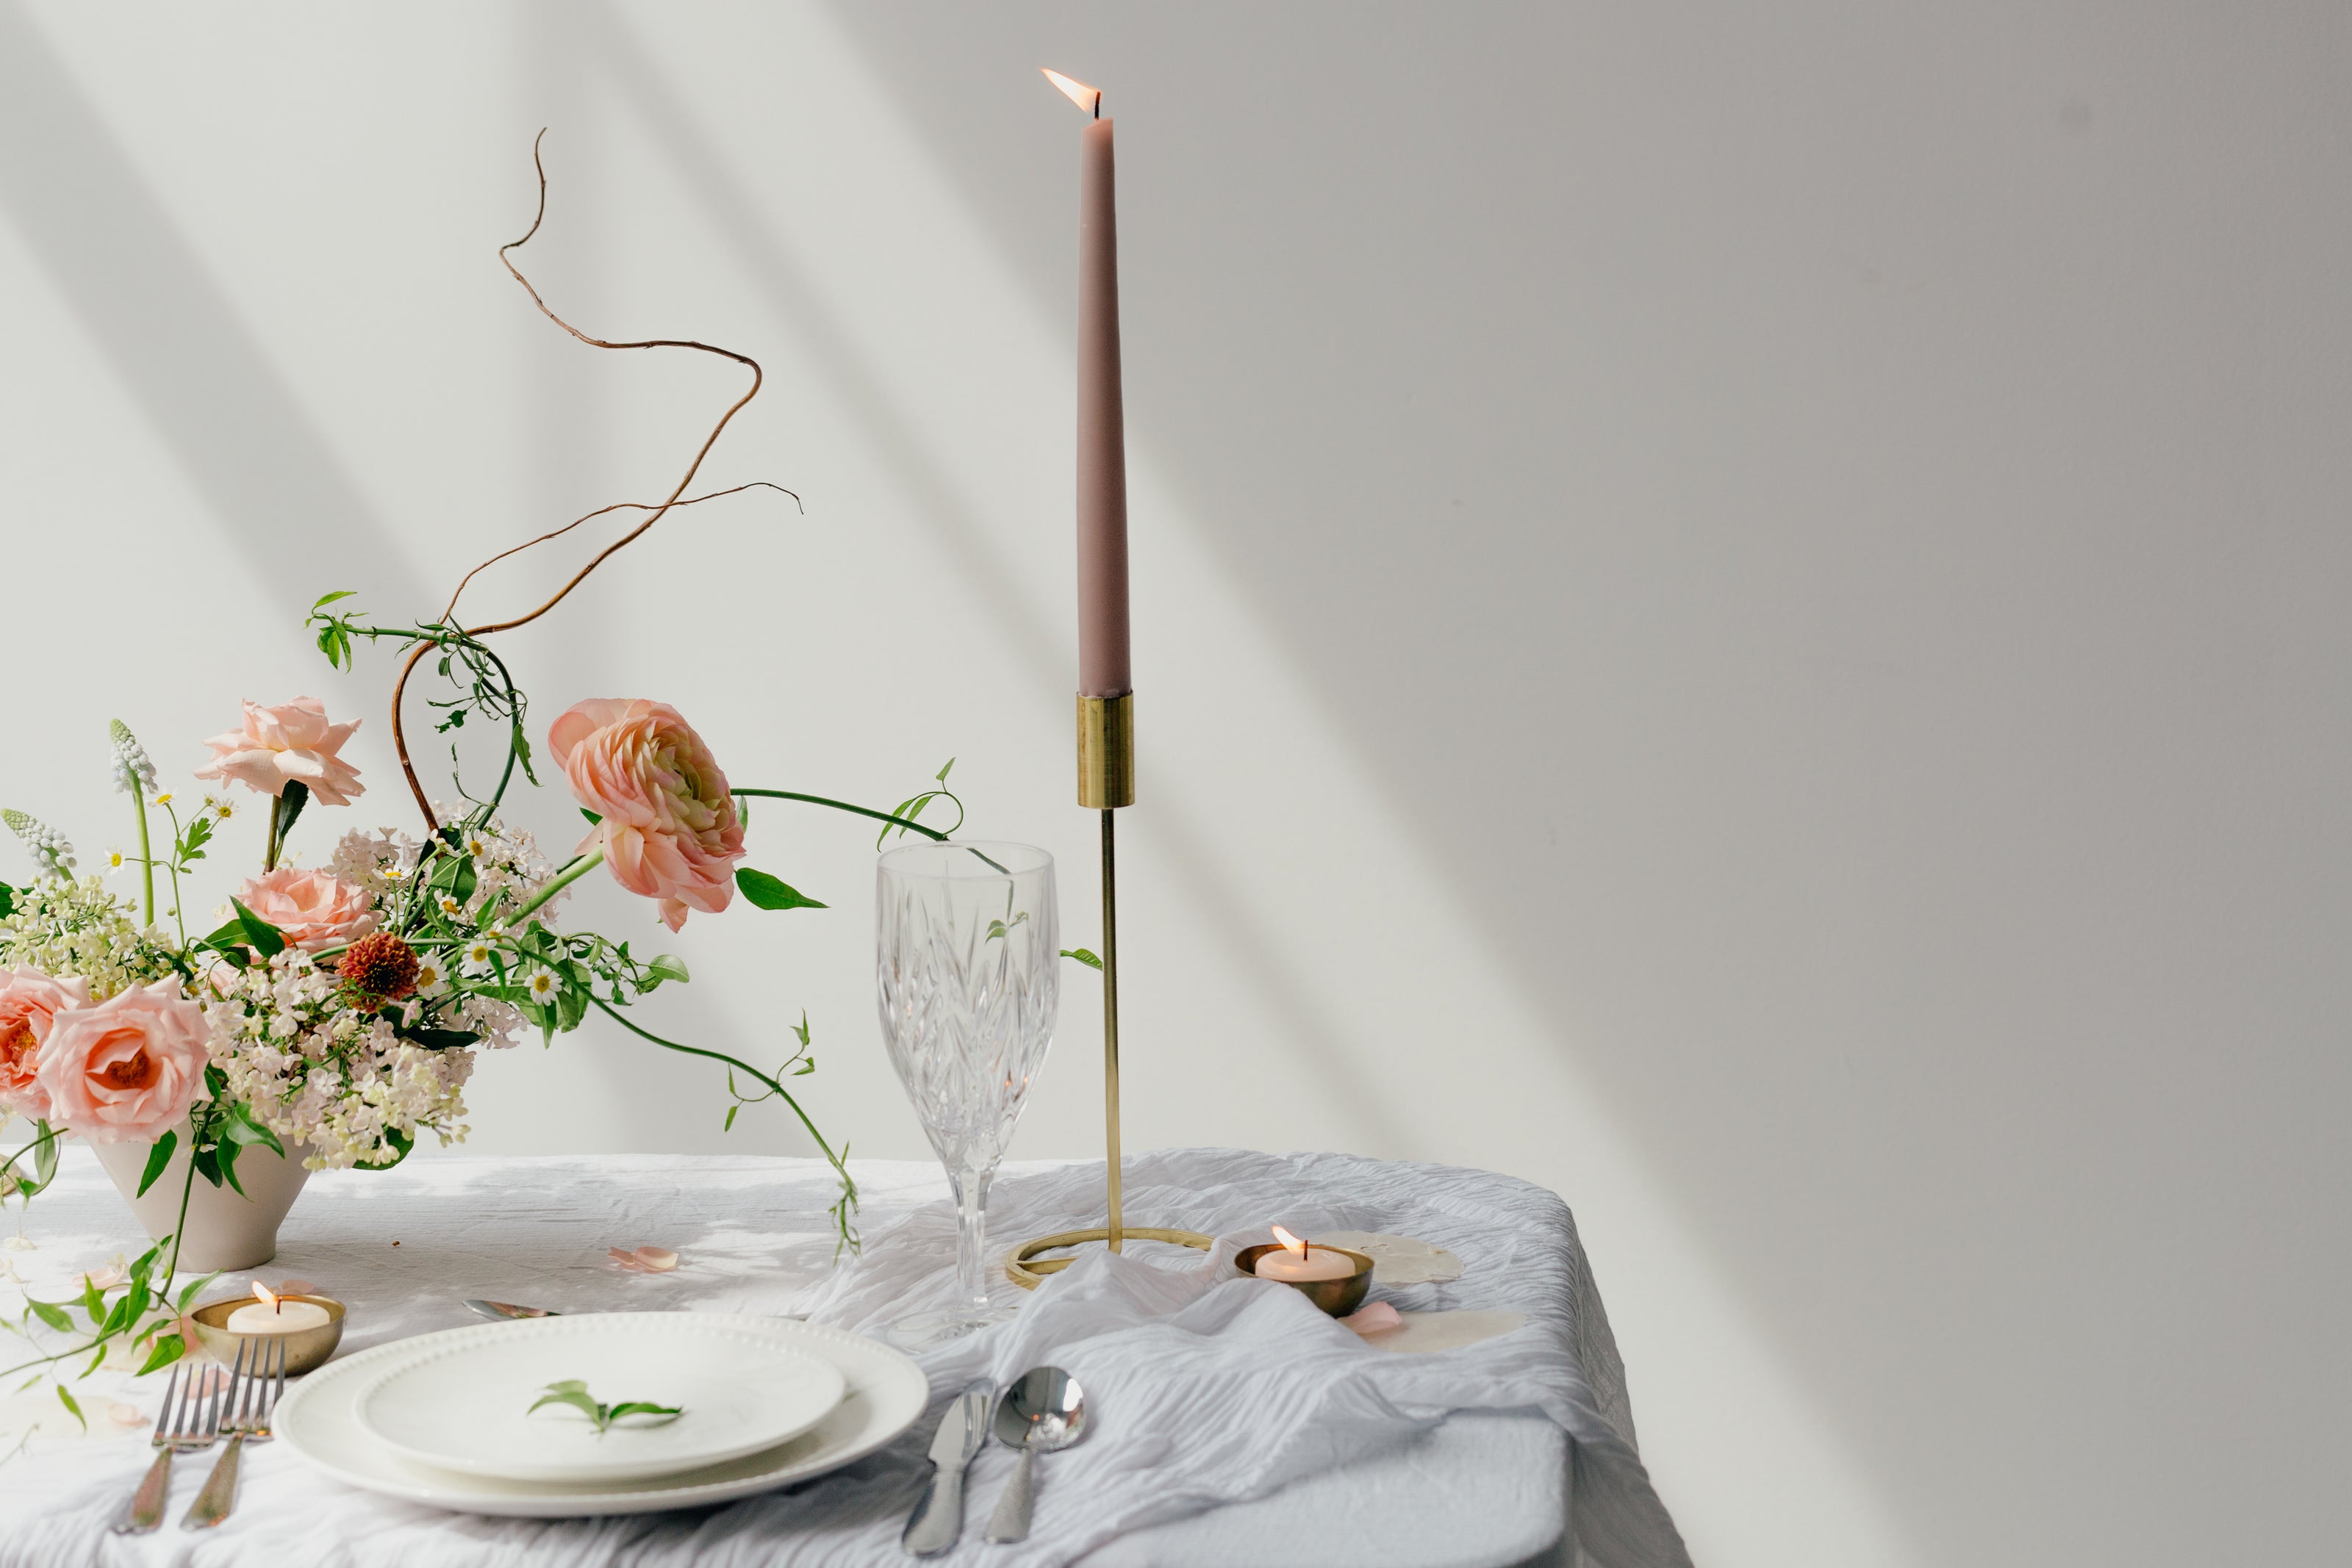 elemento di arredamento olfattivo su tavola apparecchiata ed ornamentata con fiori, cialda profumata e candela su candelabro in ottone, kodo.boutique